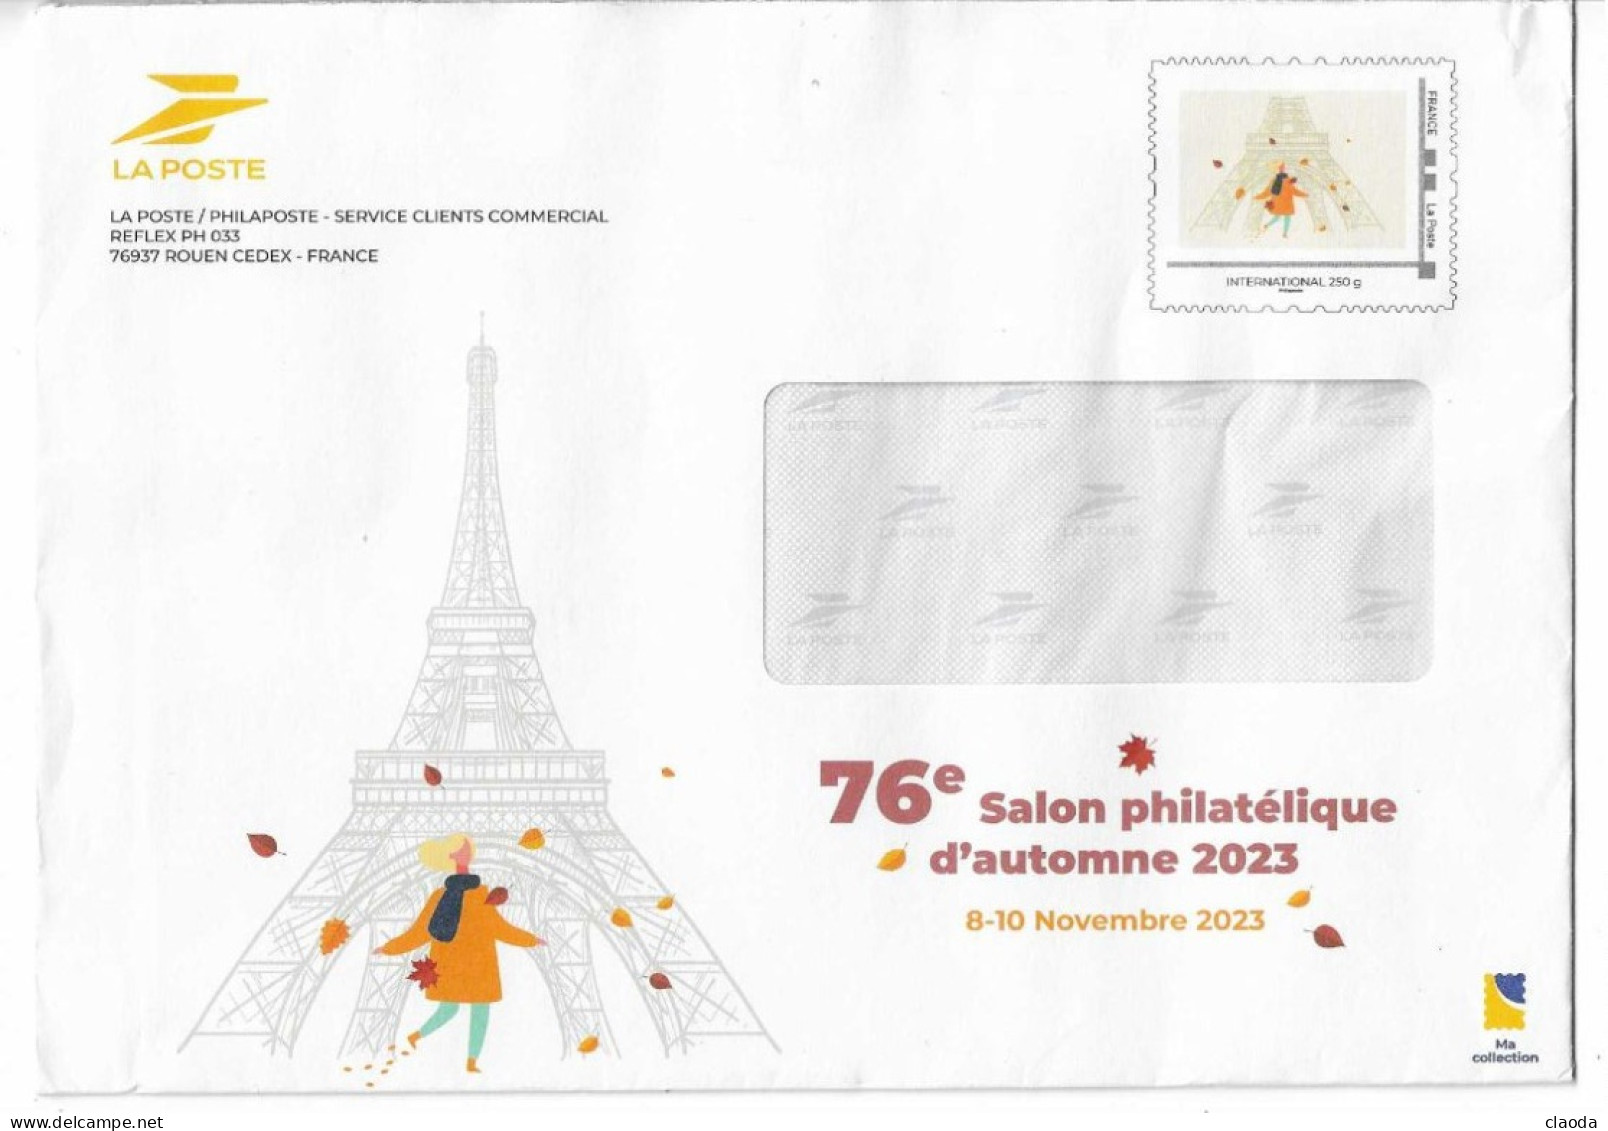 20004 -ENTIER POSTAL  La Poste Phil@poste  -2023  - 76éme SALON PHILAT2LIQUE D'AUTOMNE - International  250 Grs - - Prêts-à-poster:Stamped On Demand & Semi-official Overprinting (1995-...)